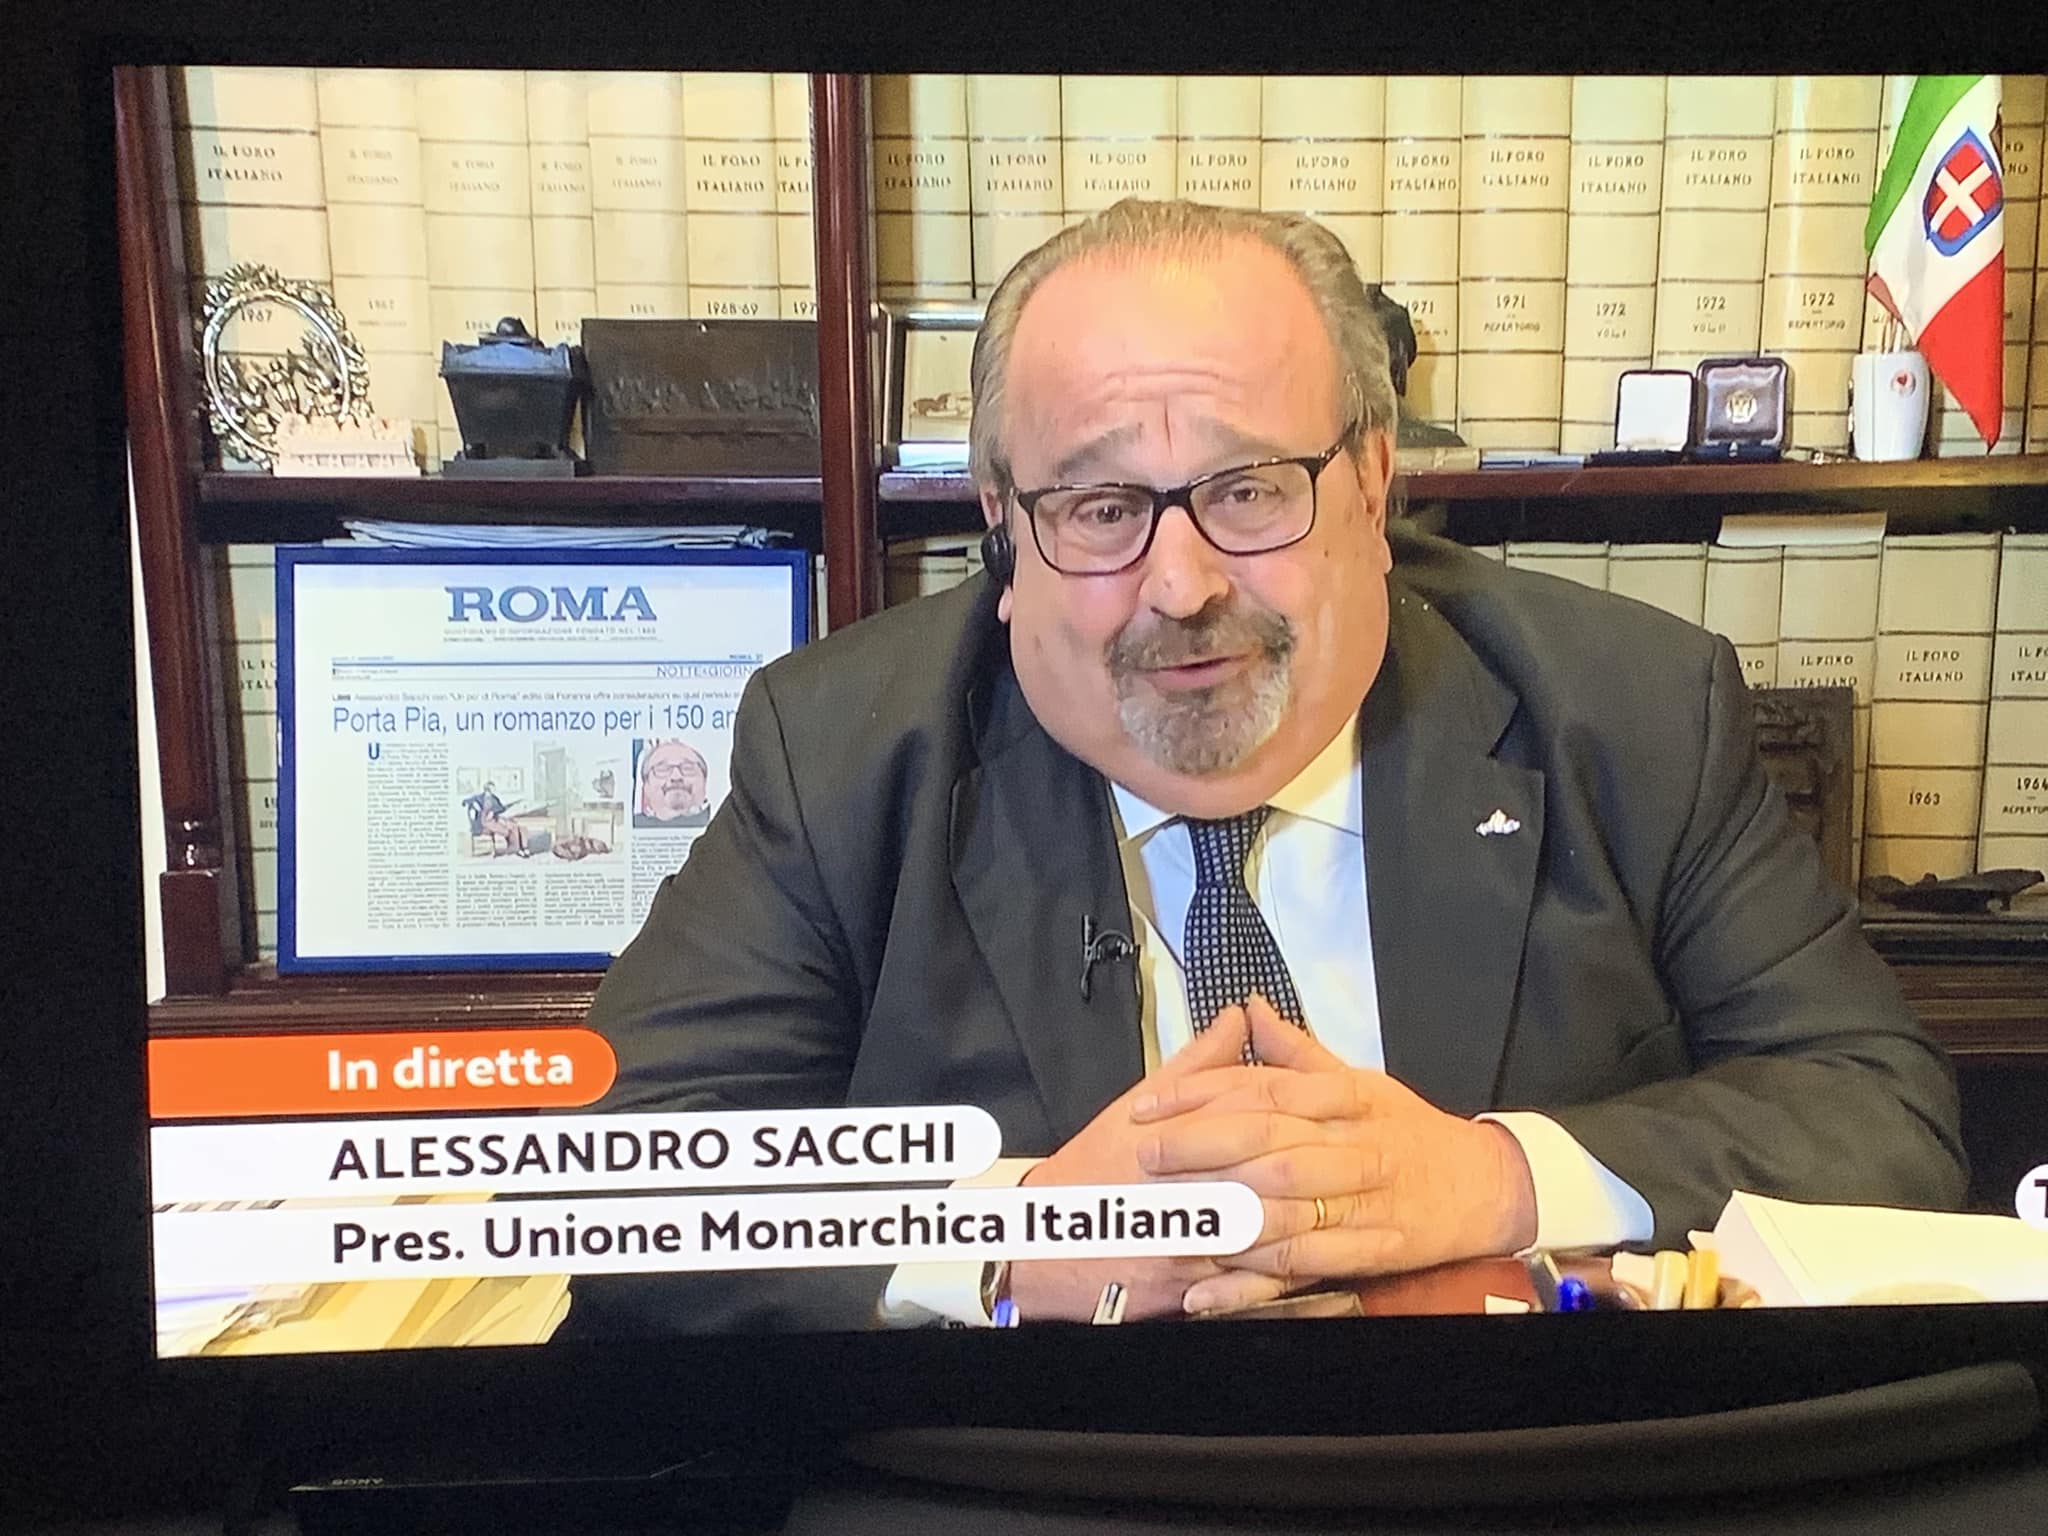 Conversazione con l’avvocato Alessandro Sacchi, Presidente nazionale dell’Unione Monarchica Italiana